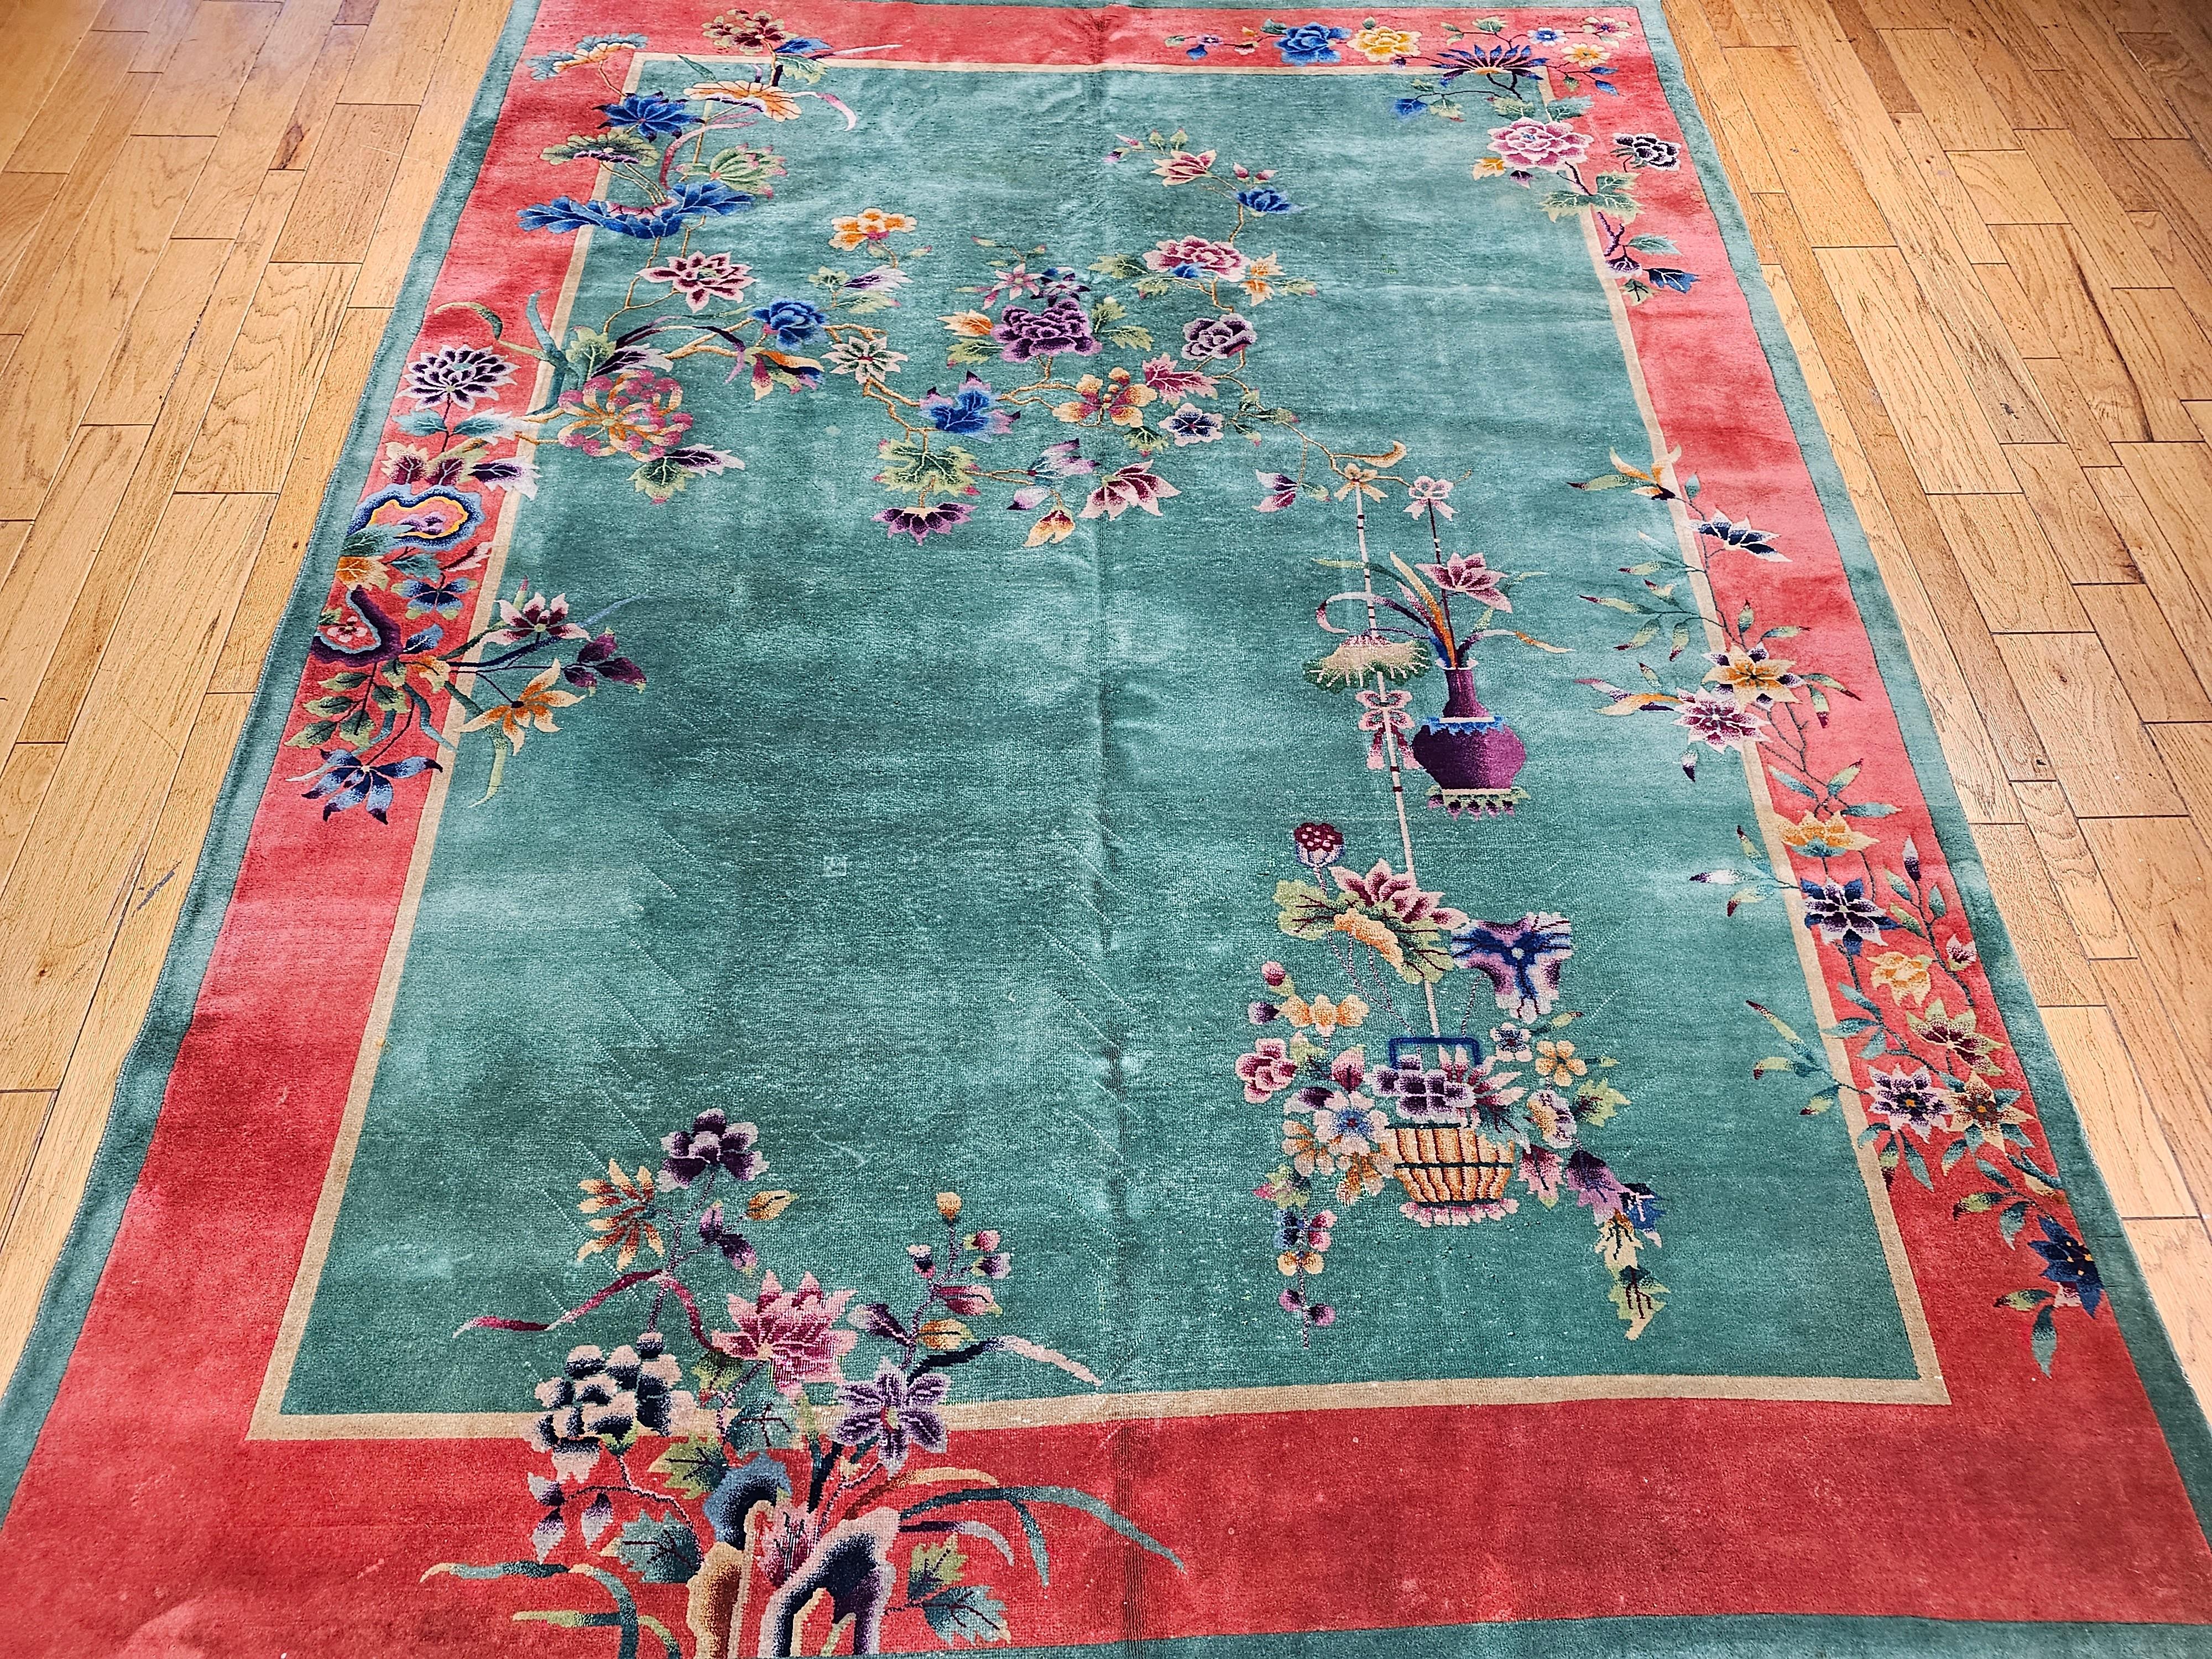 Atemberaubend schön!  Ein handgeknüpfter chinesischer Deko-Teppich mit Vasen- und Blumenmuster.  Dieser Teppich hat ein wunderschönes grünes Feld mit einem üppigen Blumenmuster, das sich in Violett, Blau, Rot, Gelb und Schattierungen dieser Farben